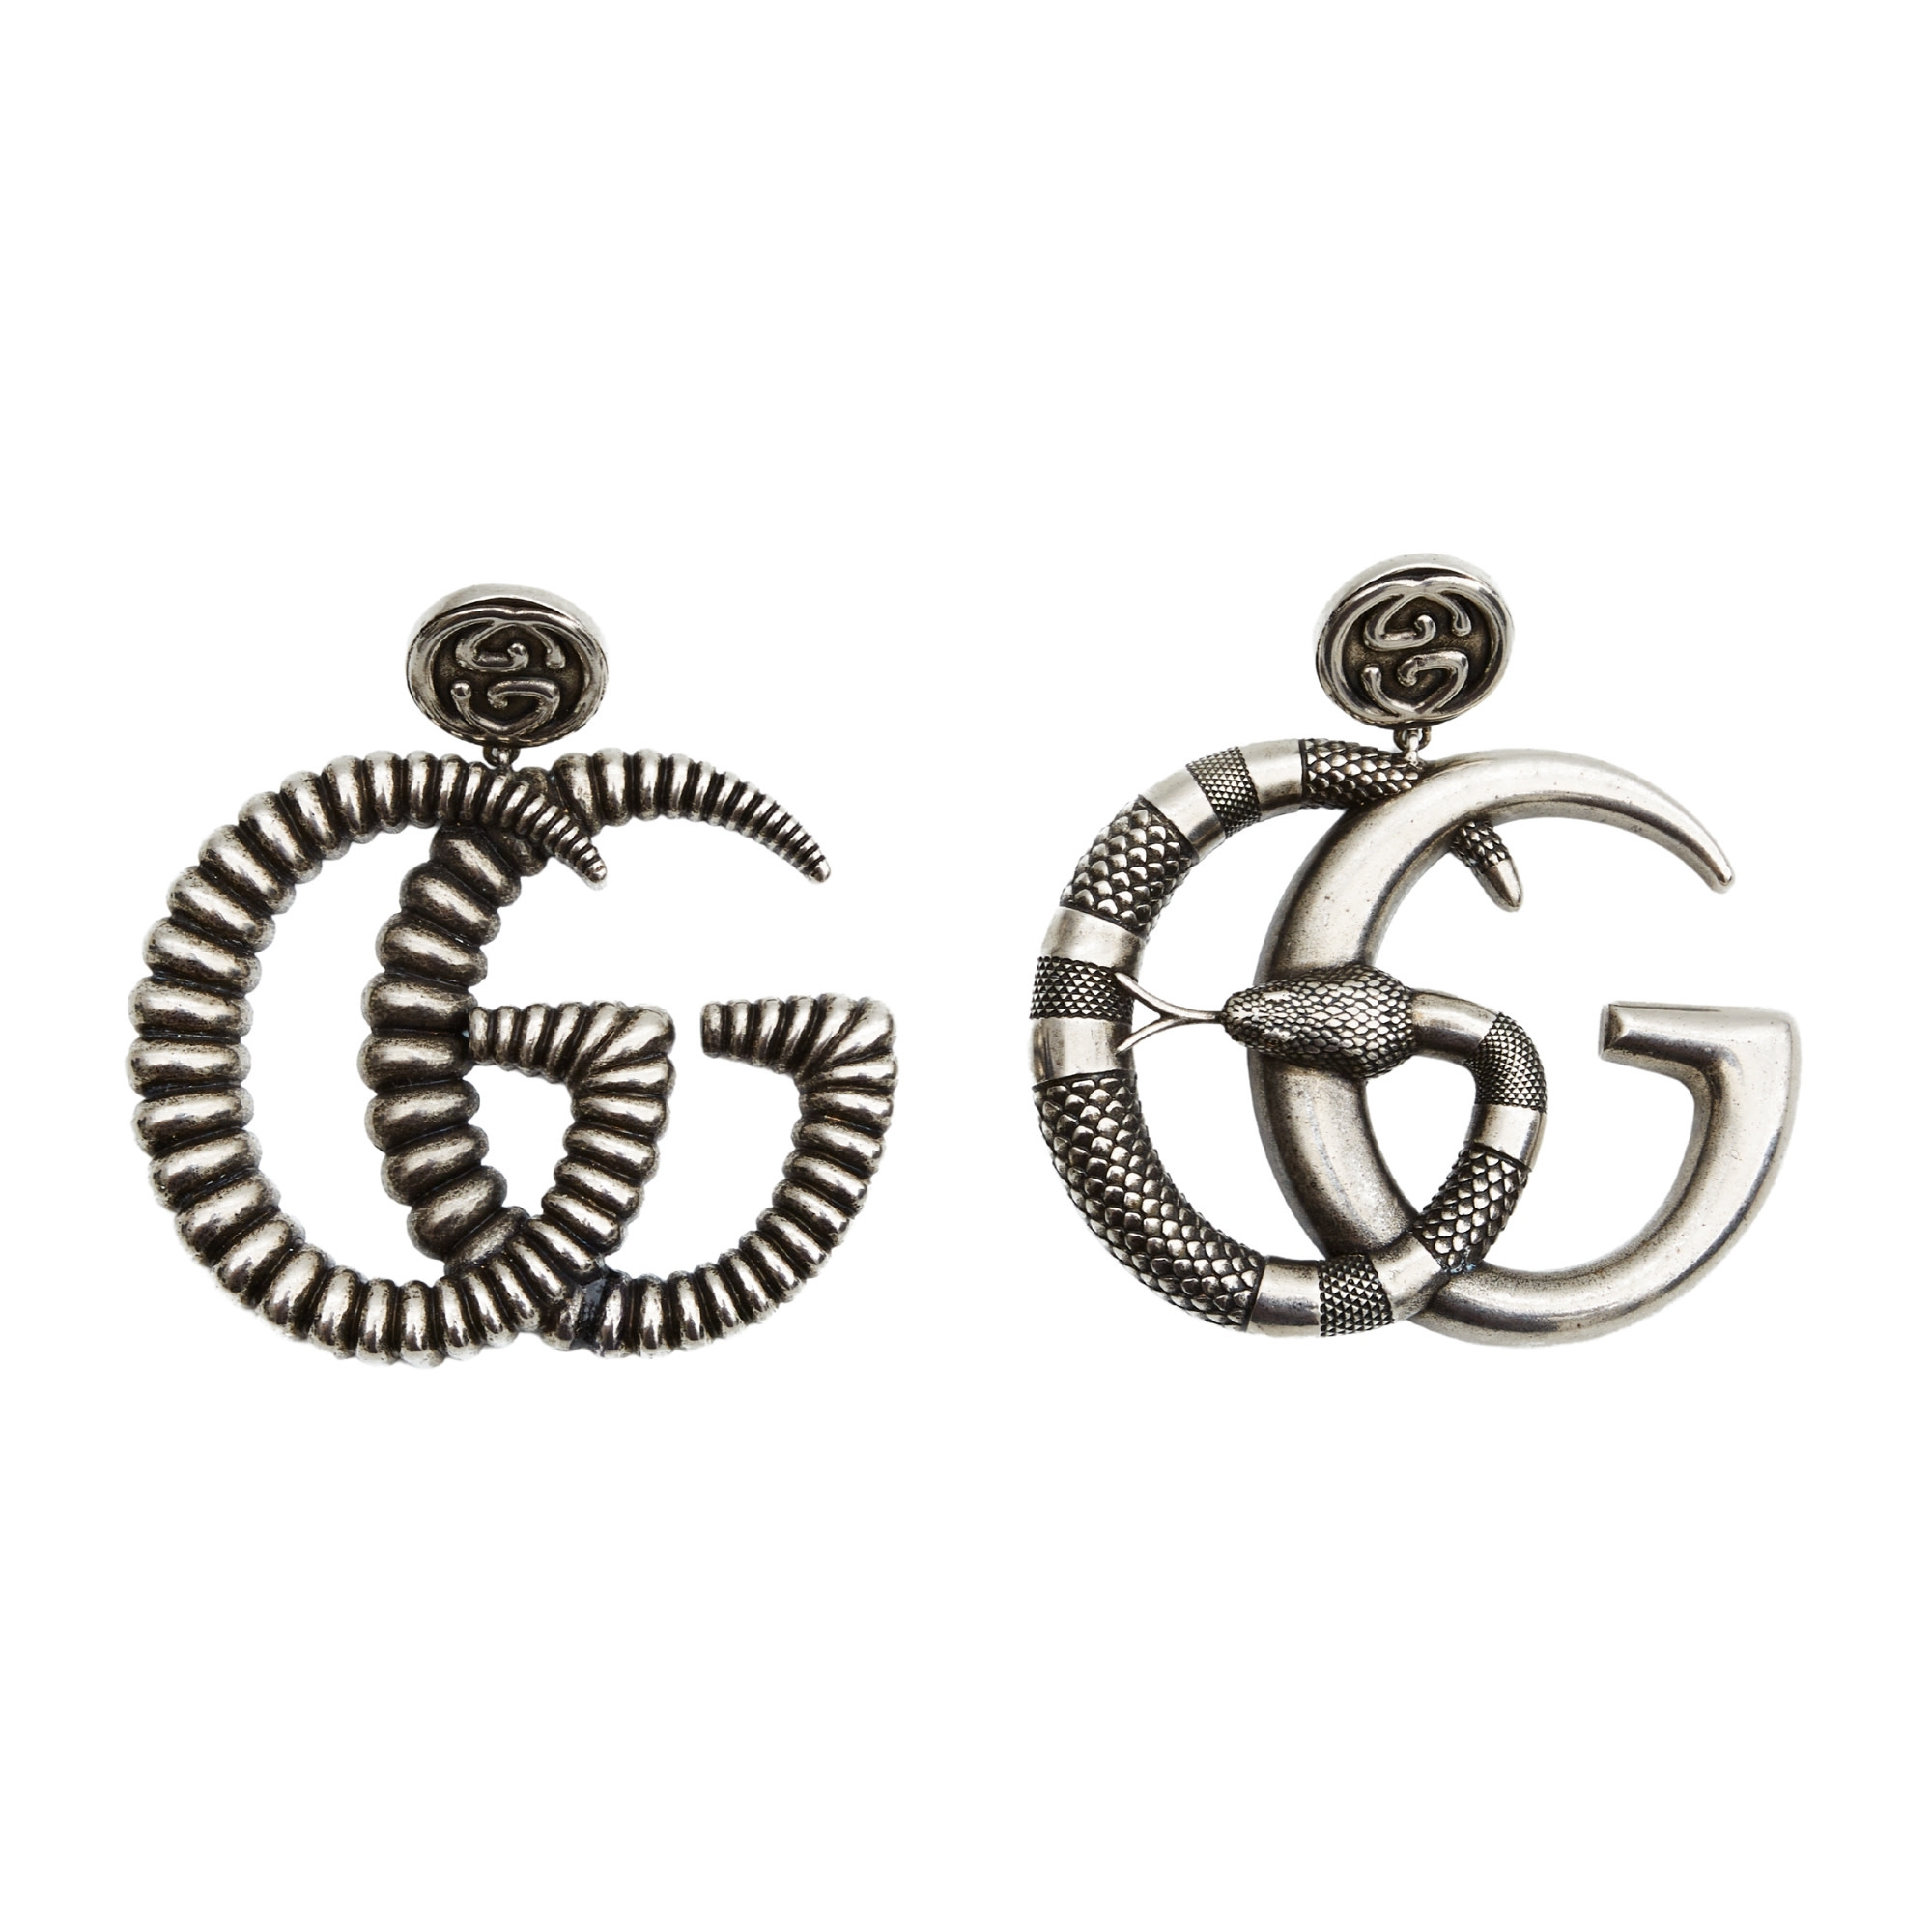 Logo Ear Cuffs in Silver - Gucci